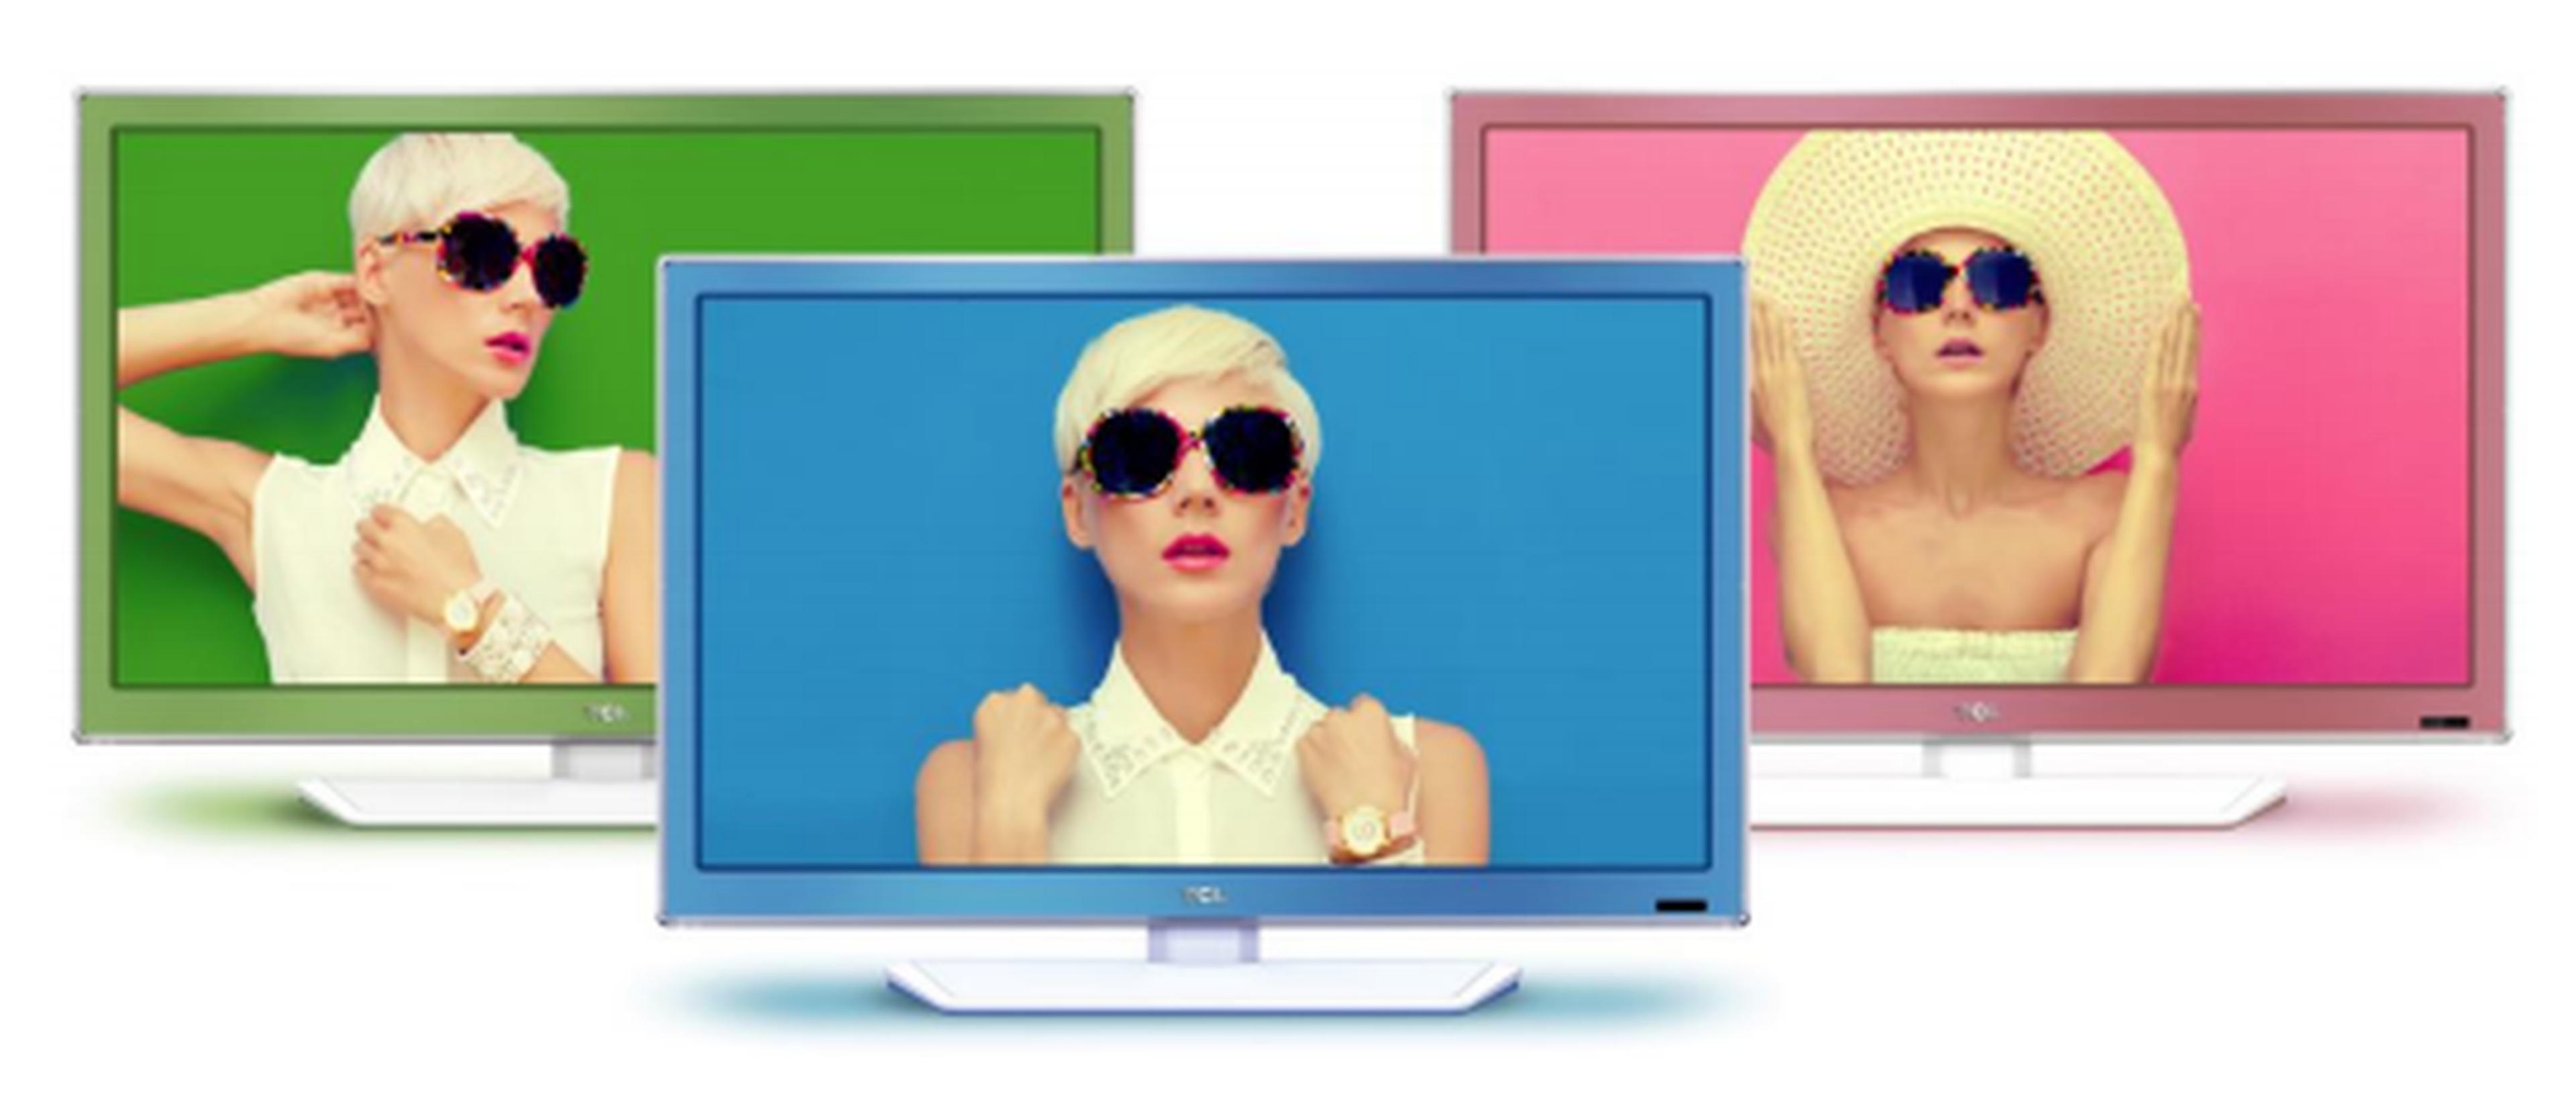 TCL amplía su gama de televisores de colores